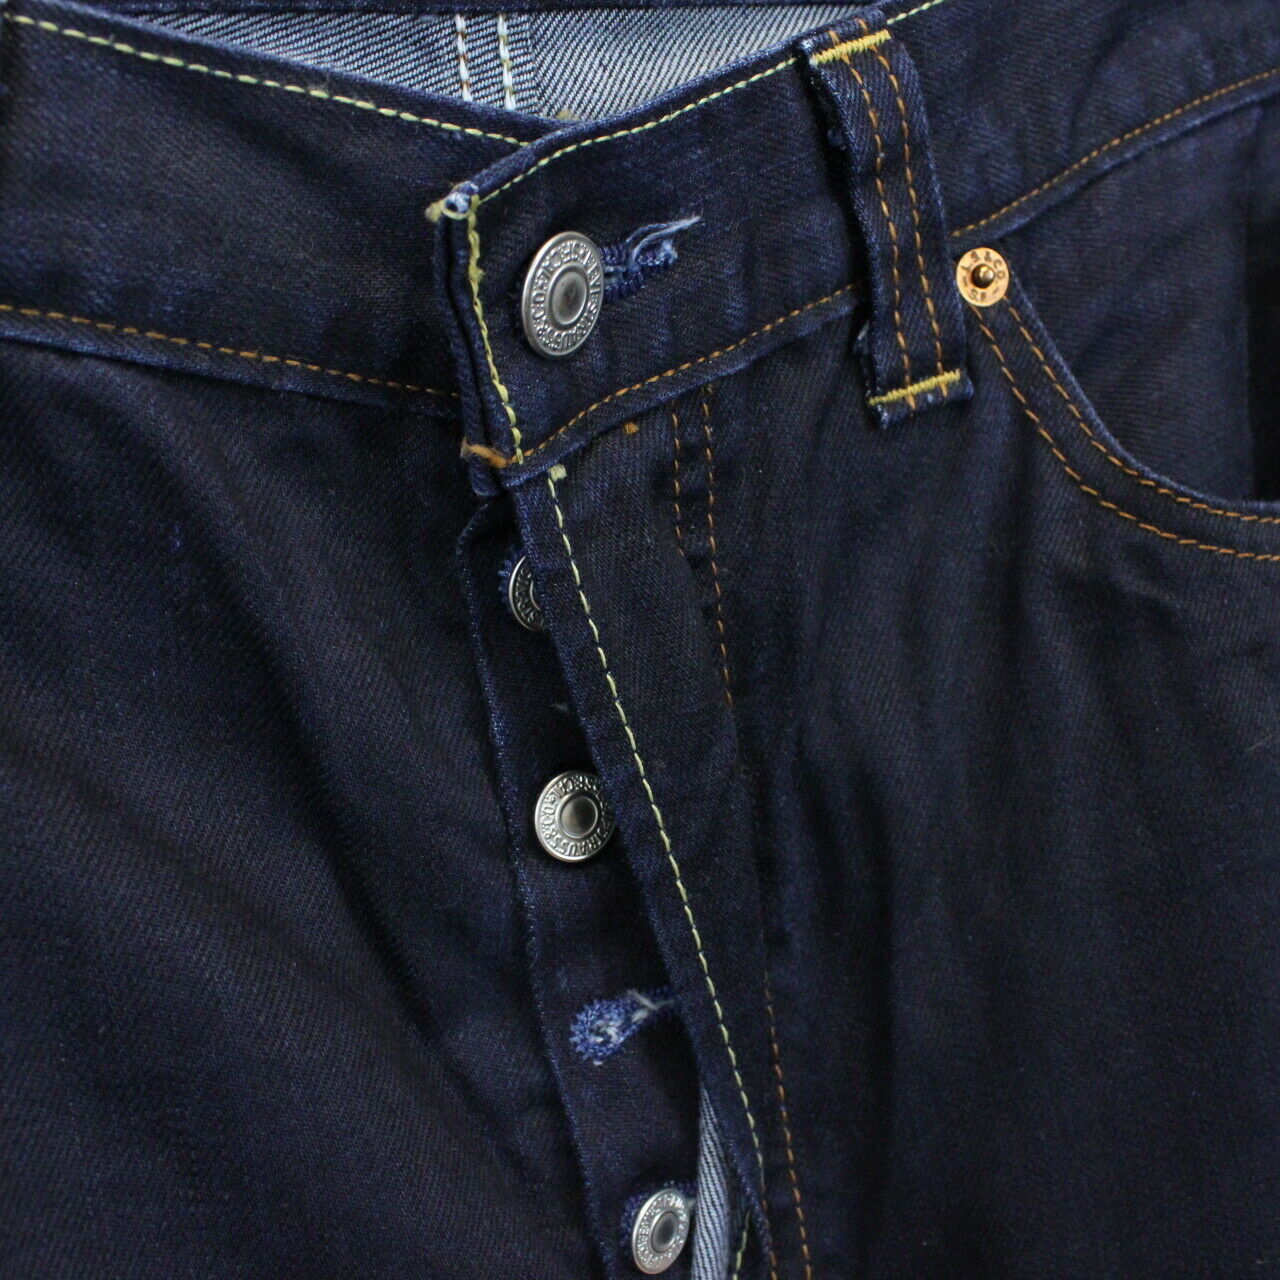 LEVIS 501 S Skinny Jeans Indigo | W34 L34